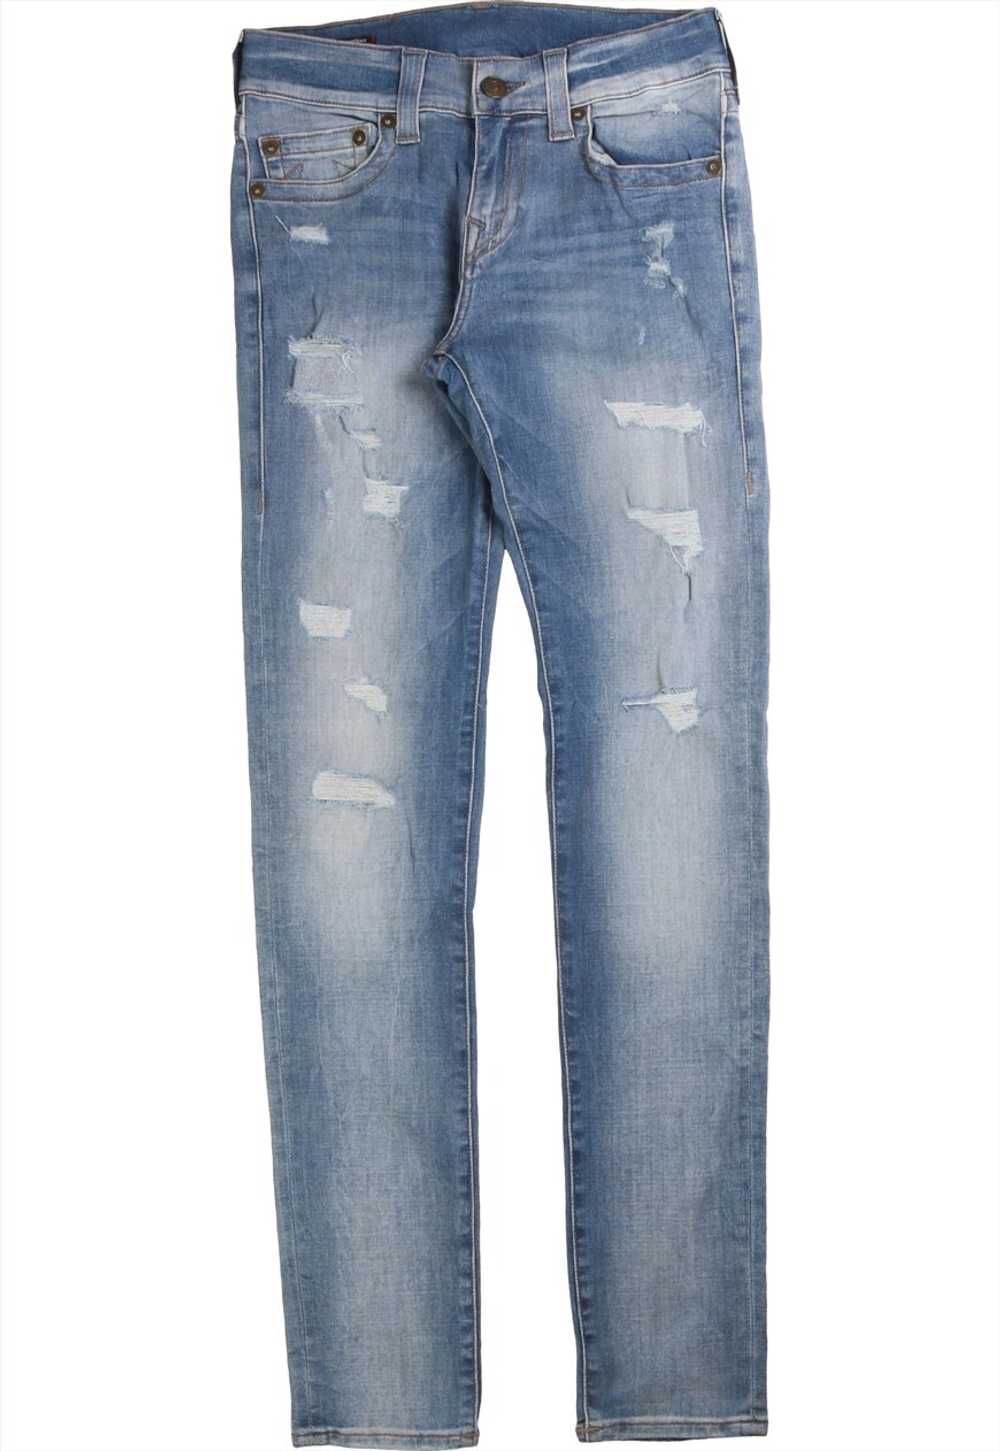 Vintage 90's True Religion Jeans / Pants Super Bi… - image 2